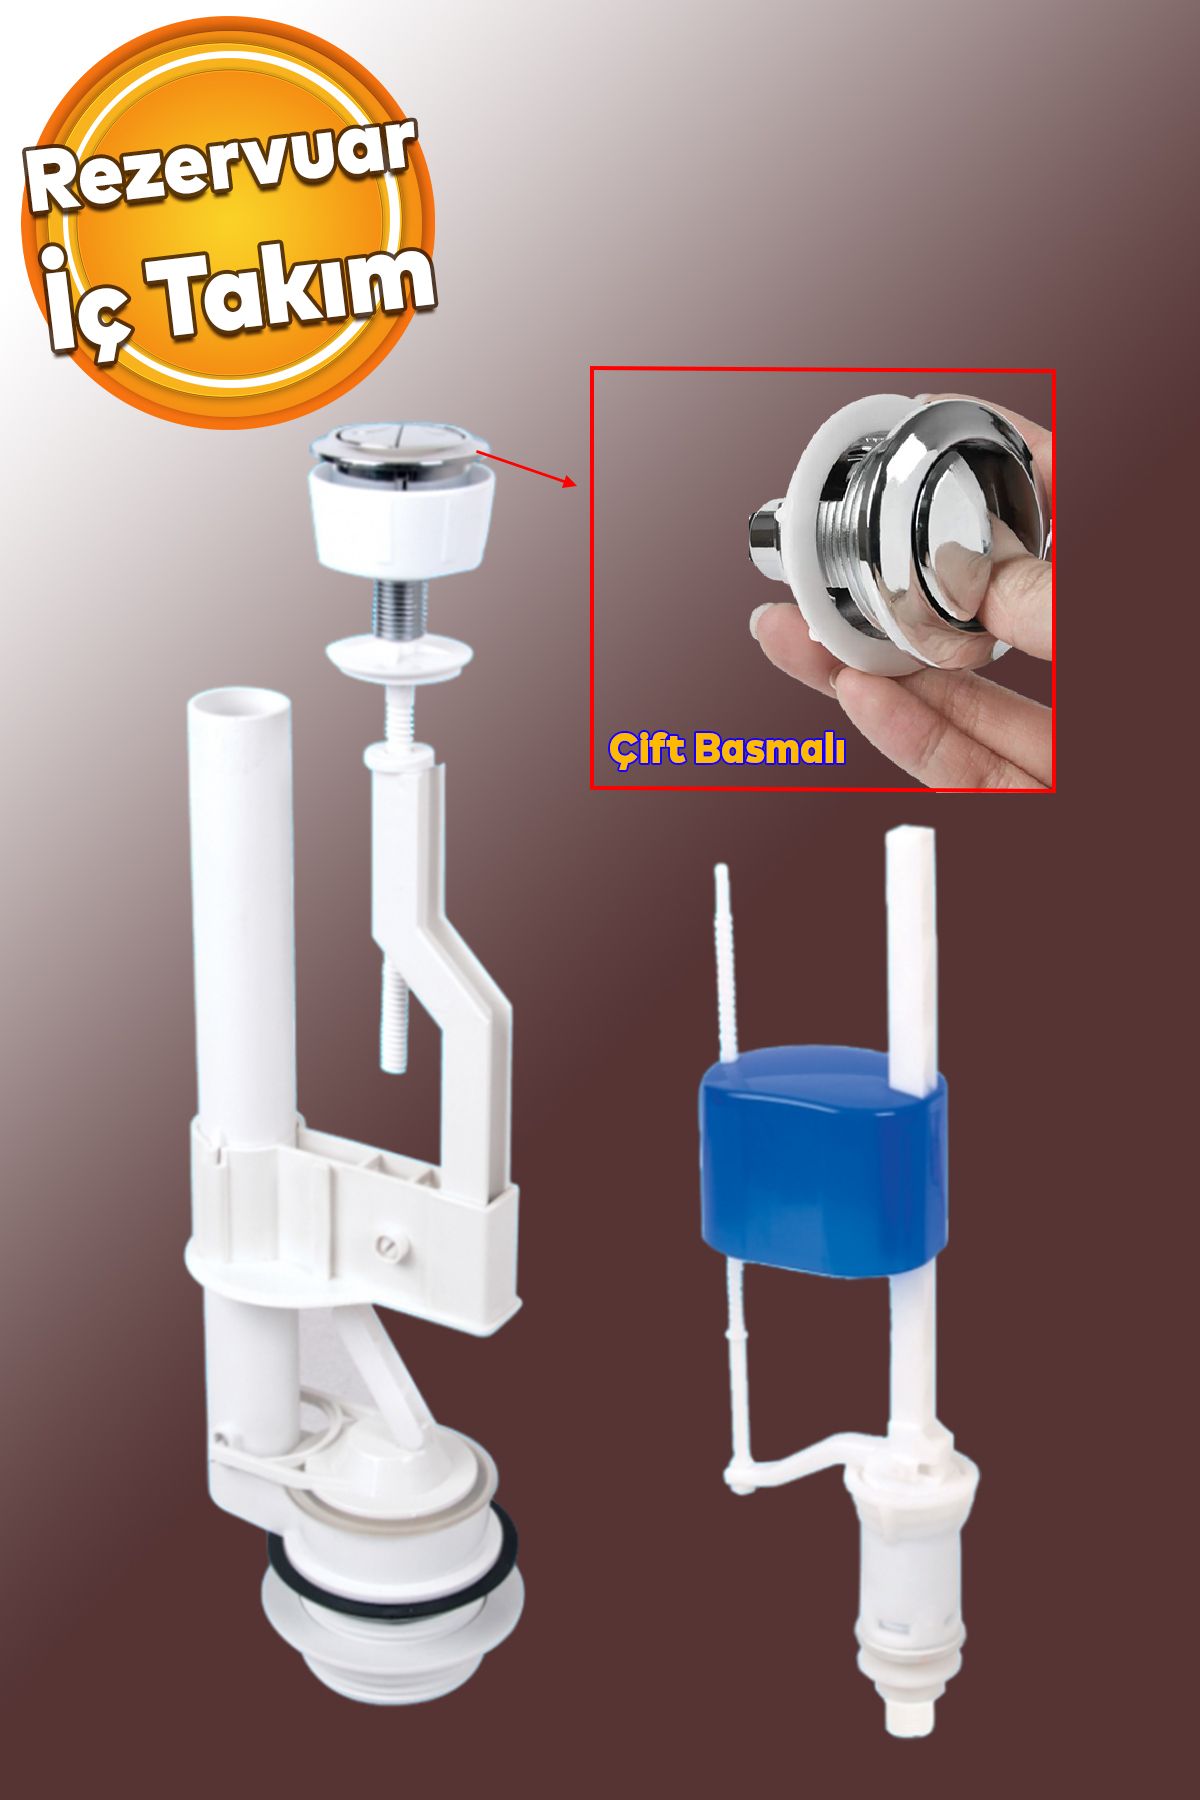 Badem10 Rezervuar İç Düzenek Otomatik Su Dolum Basmalı İç Takımı Alafranga Tuvalet Klozet Sifon Çift Basma